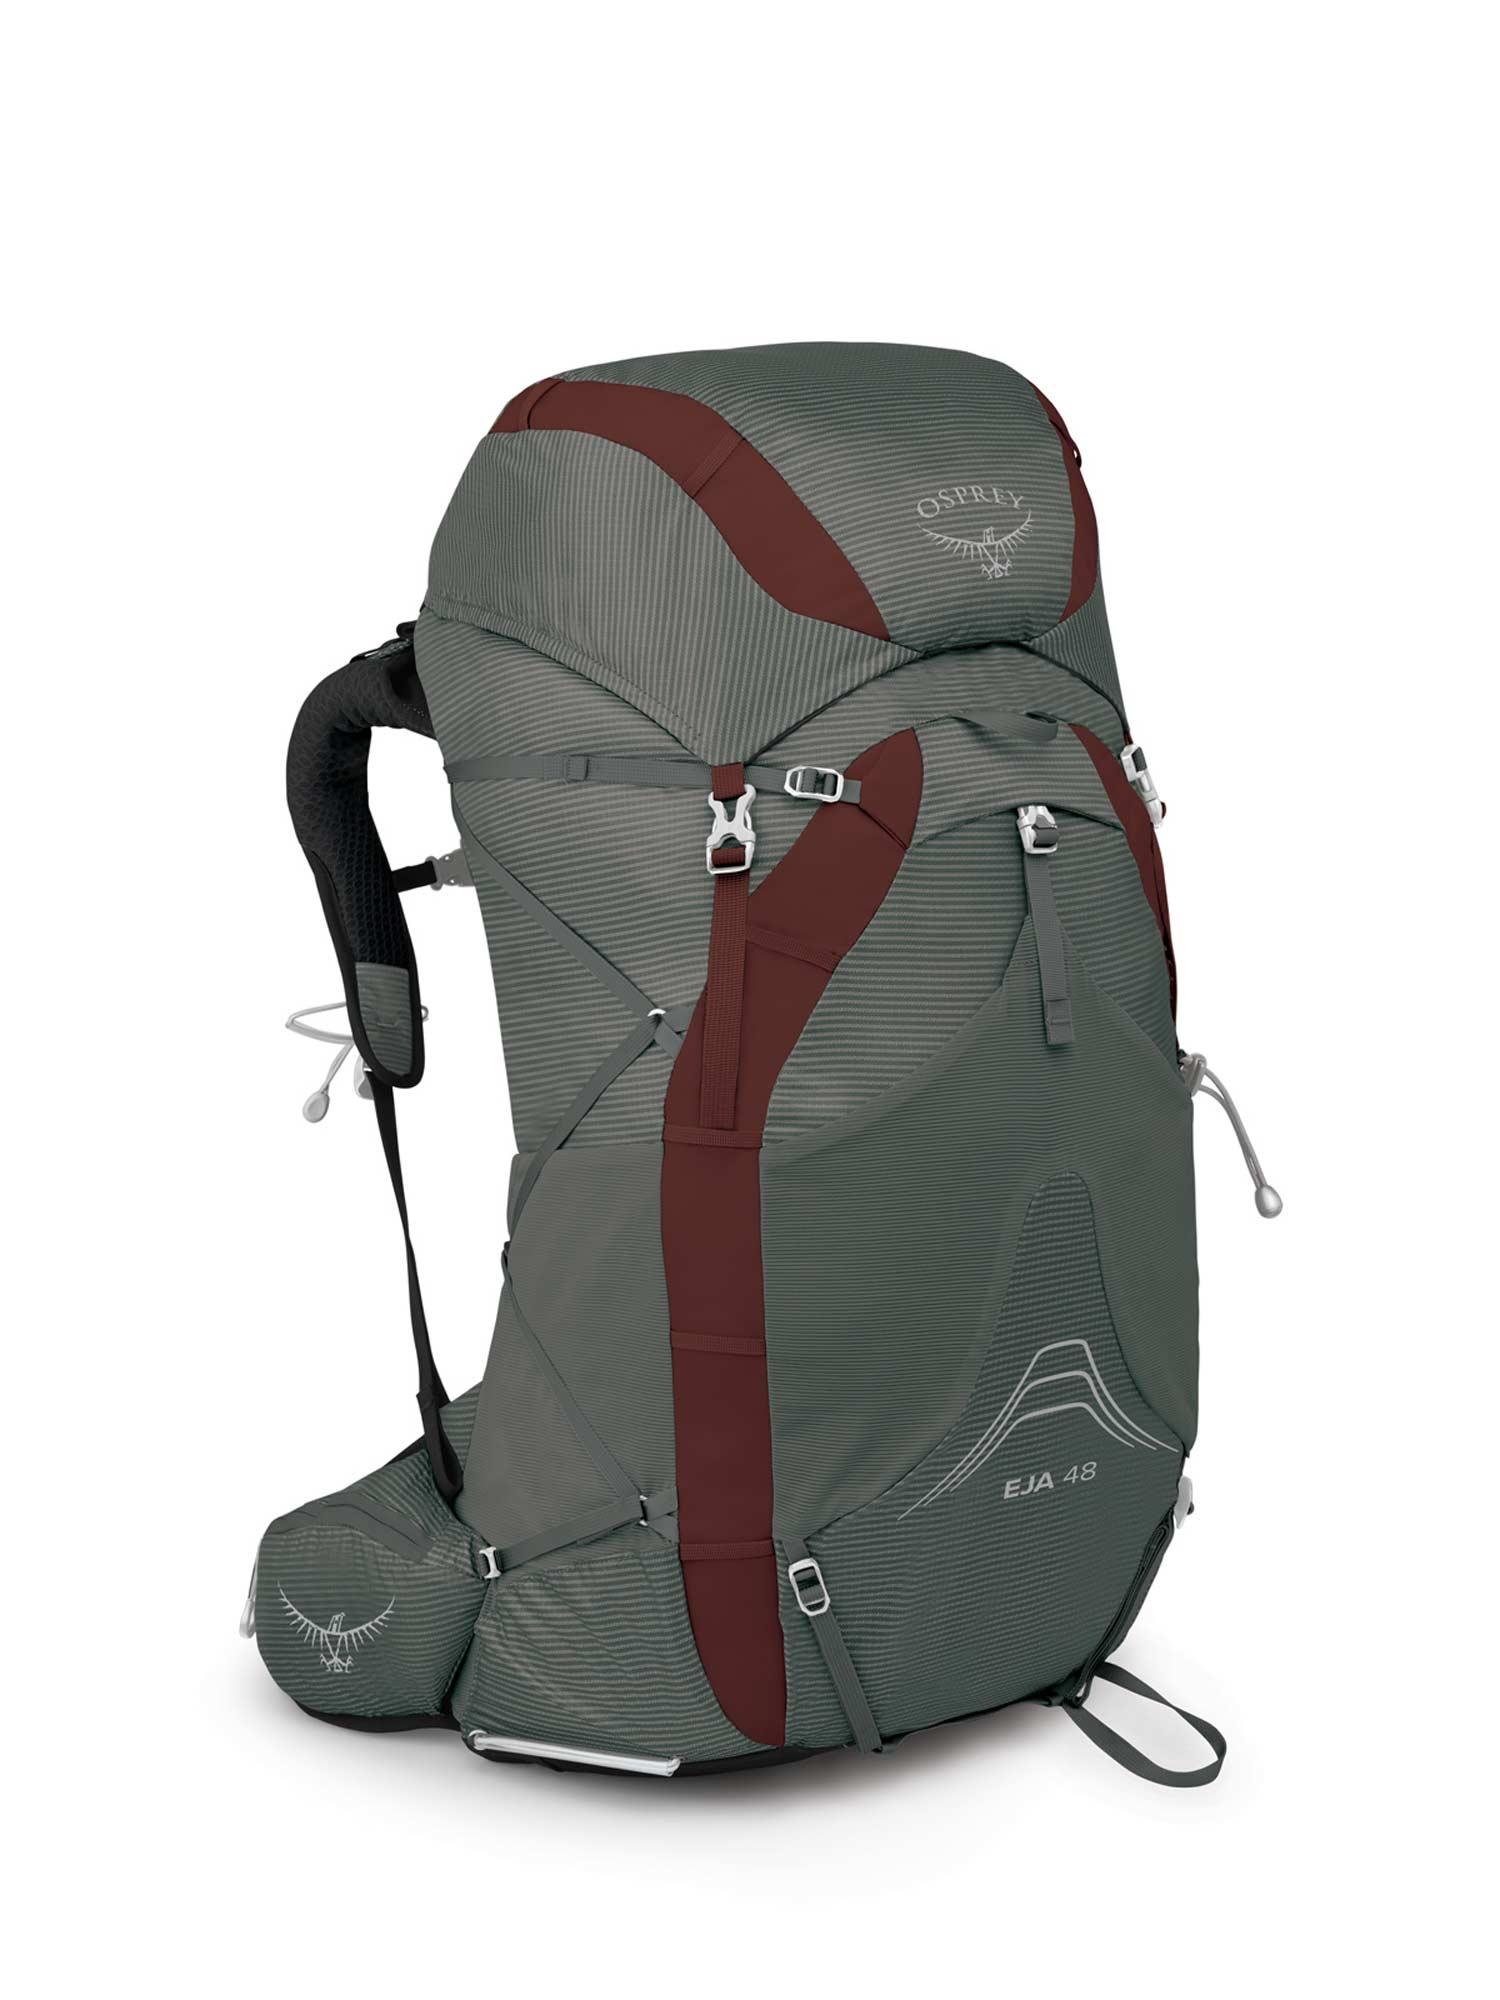 Selected image for OSPREY Ženski ranac za planinarenje Eja 48 Backpack sivi